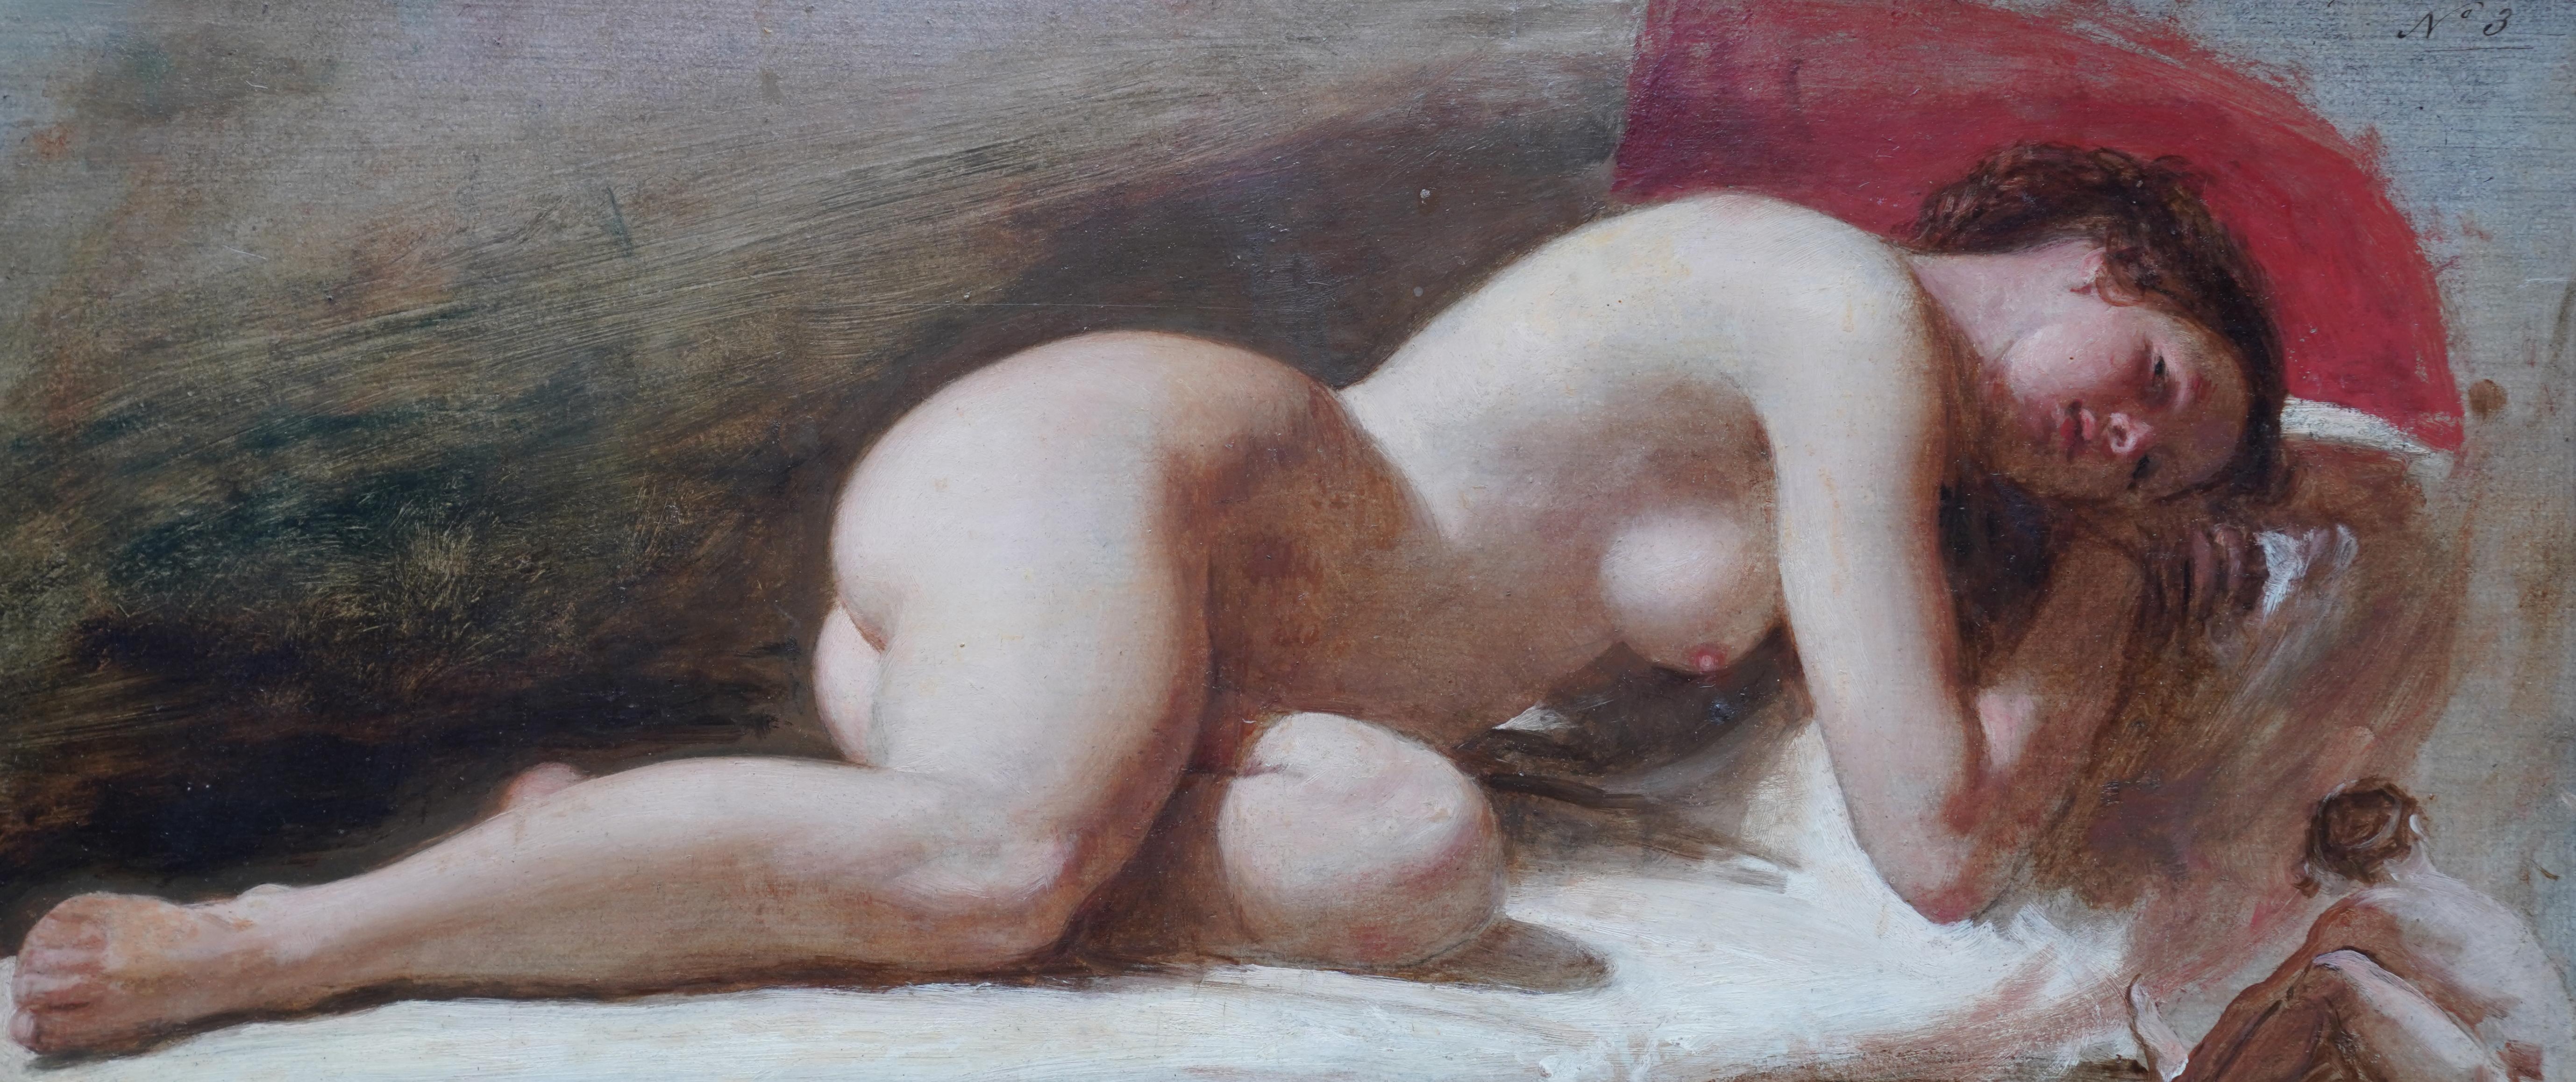 Portrait de femme nue couchée - peinture à l'huile victorienne britannique du 19e siècle - Réalisme Painting par Edward William Wyon